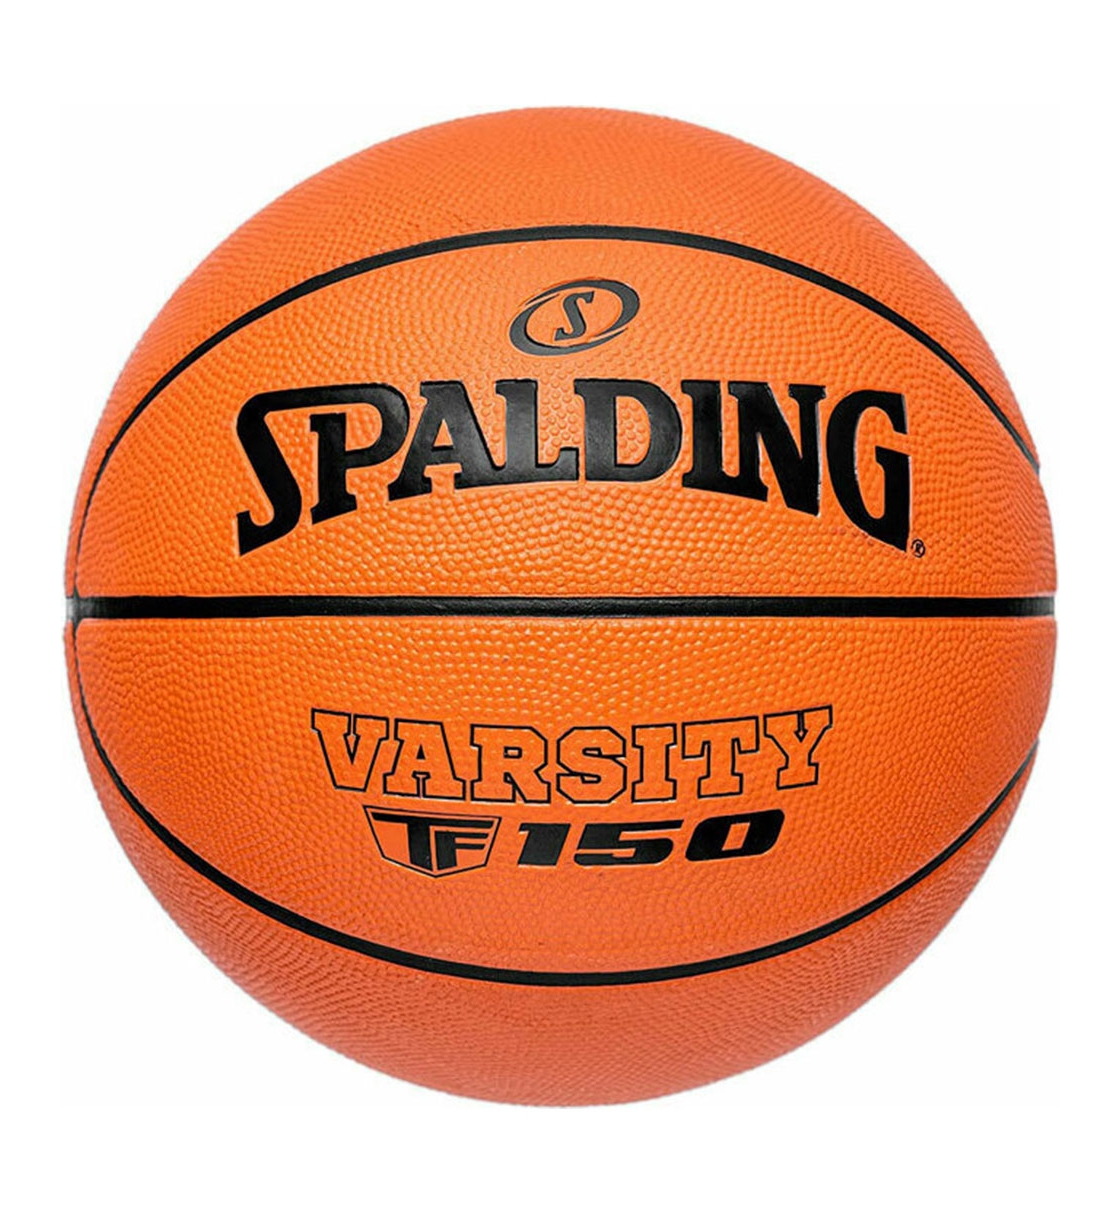 Spalding Ss22 Varsity Tf-150 Sz7 Rubber Basketball